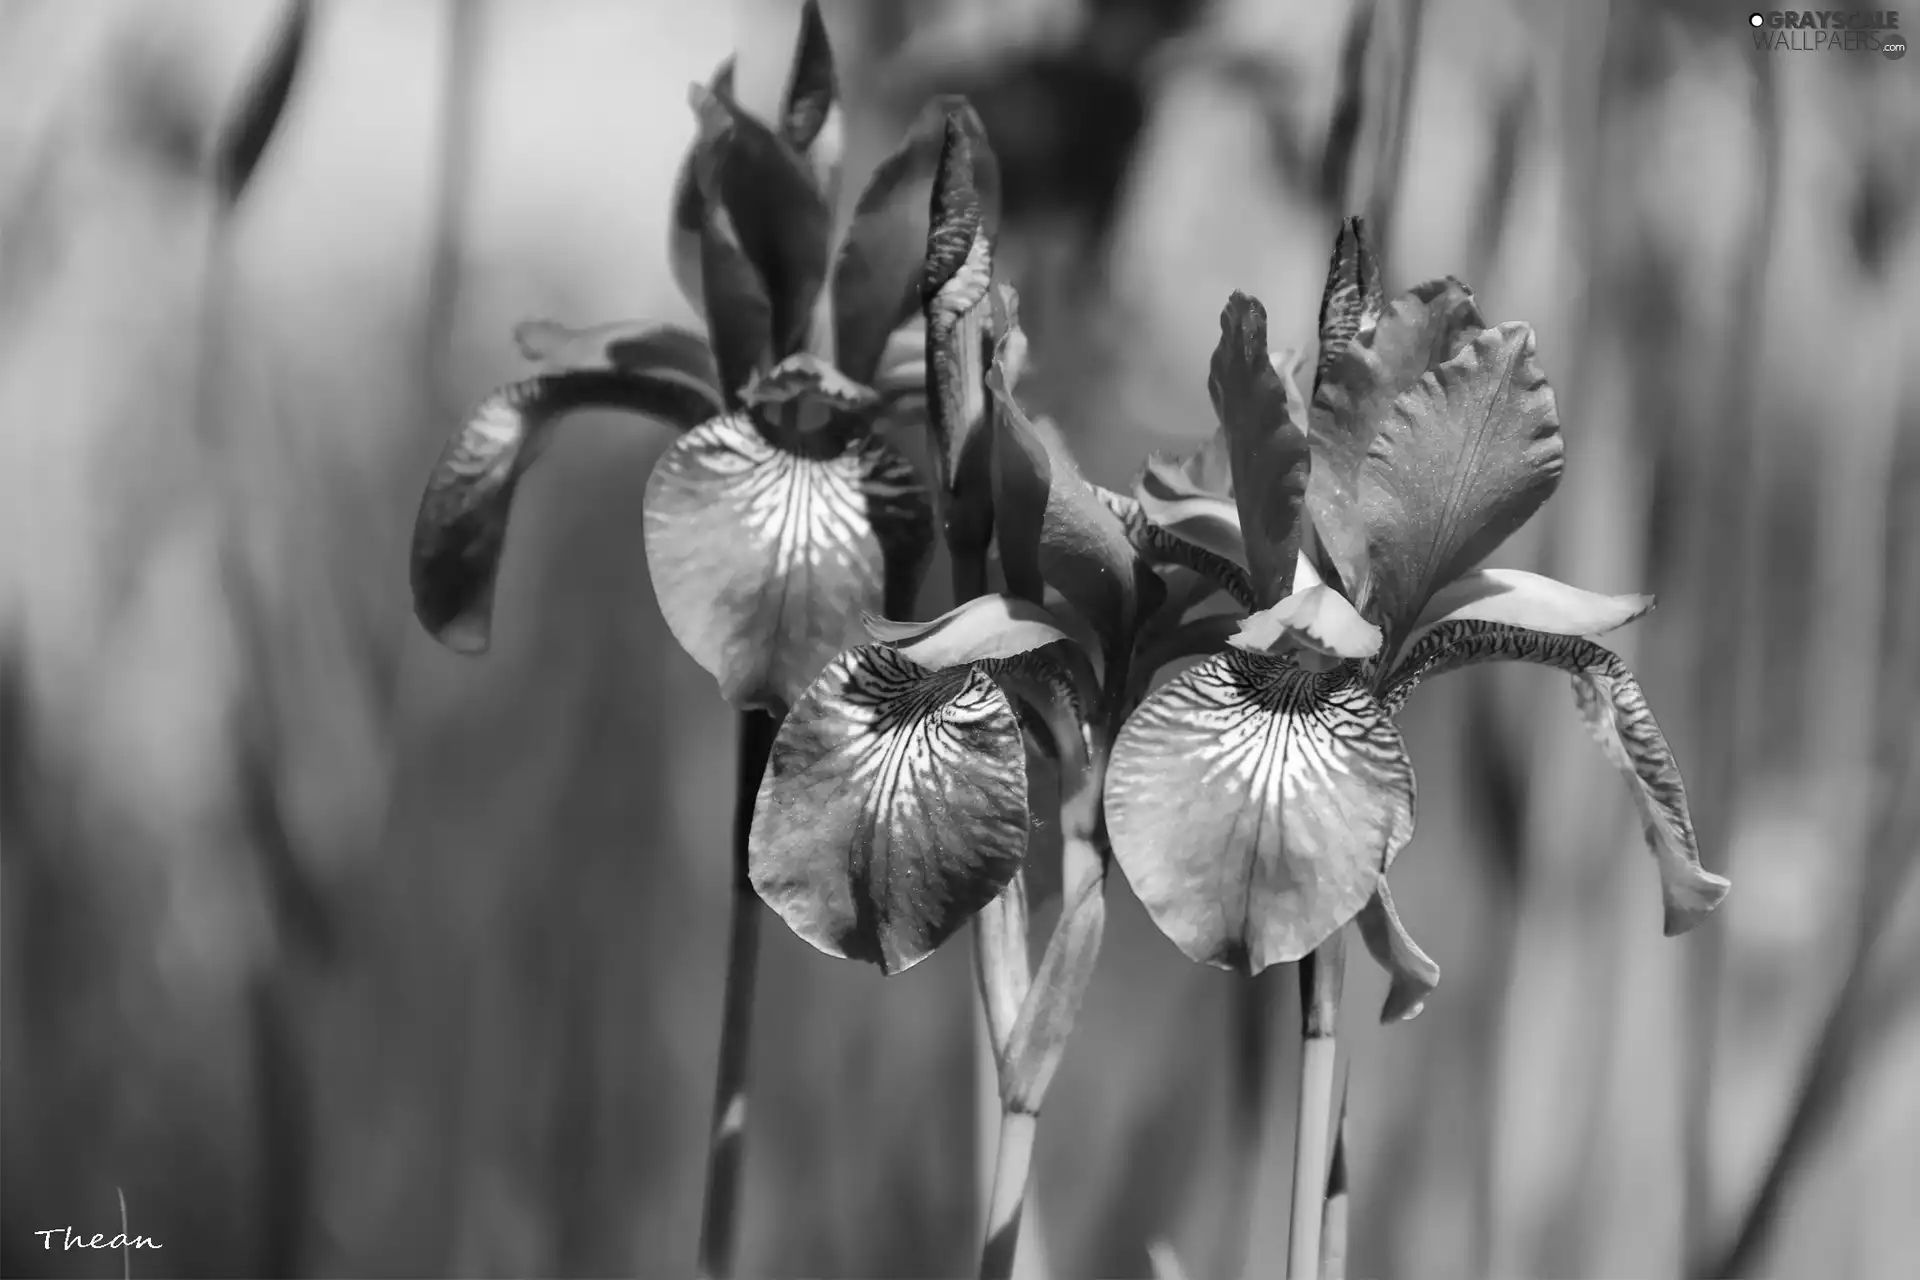 Siberian Iris, iris